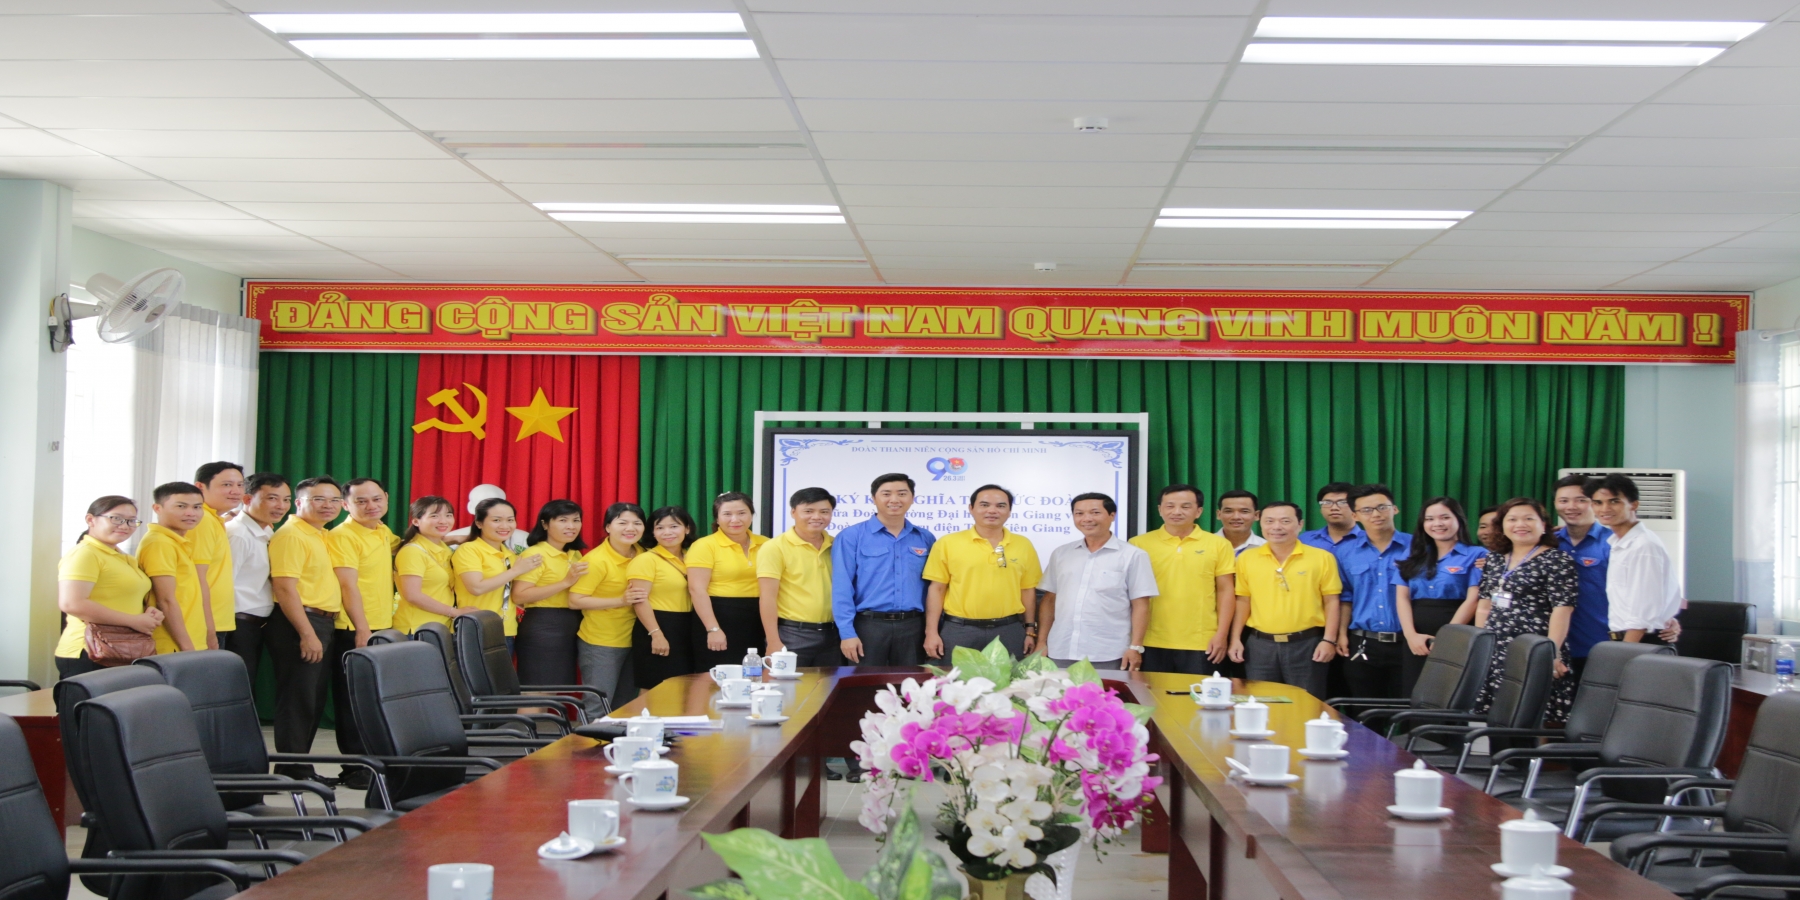 Đoàn trường Đại học Kiên Giang và Đoàn cơ sở Bưu điện tỉnh Kiên Giang gắn kết, thắt chặt tình đoàn kết